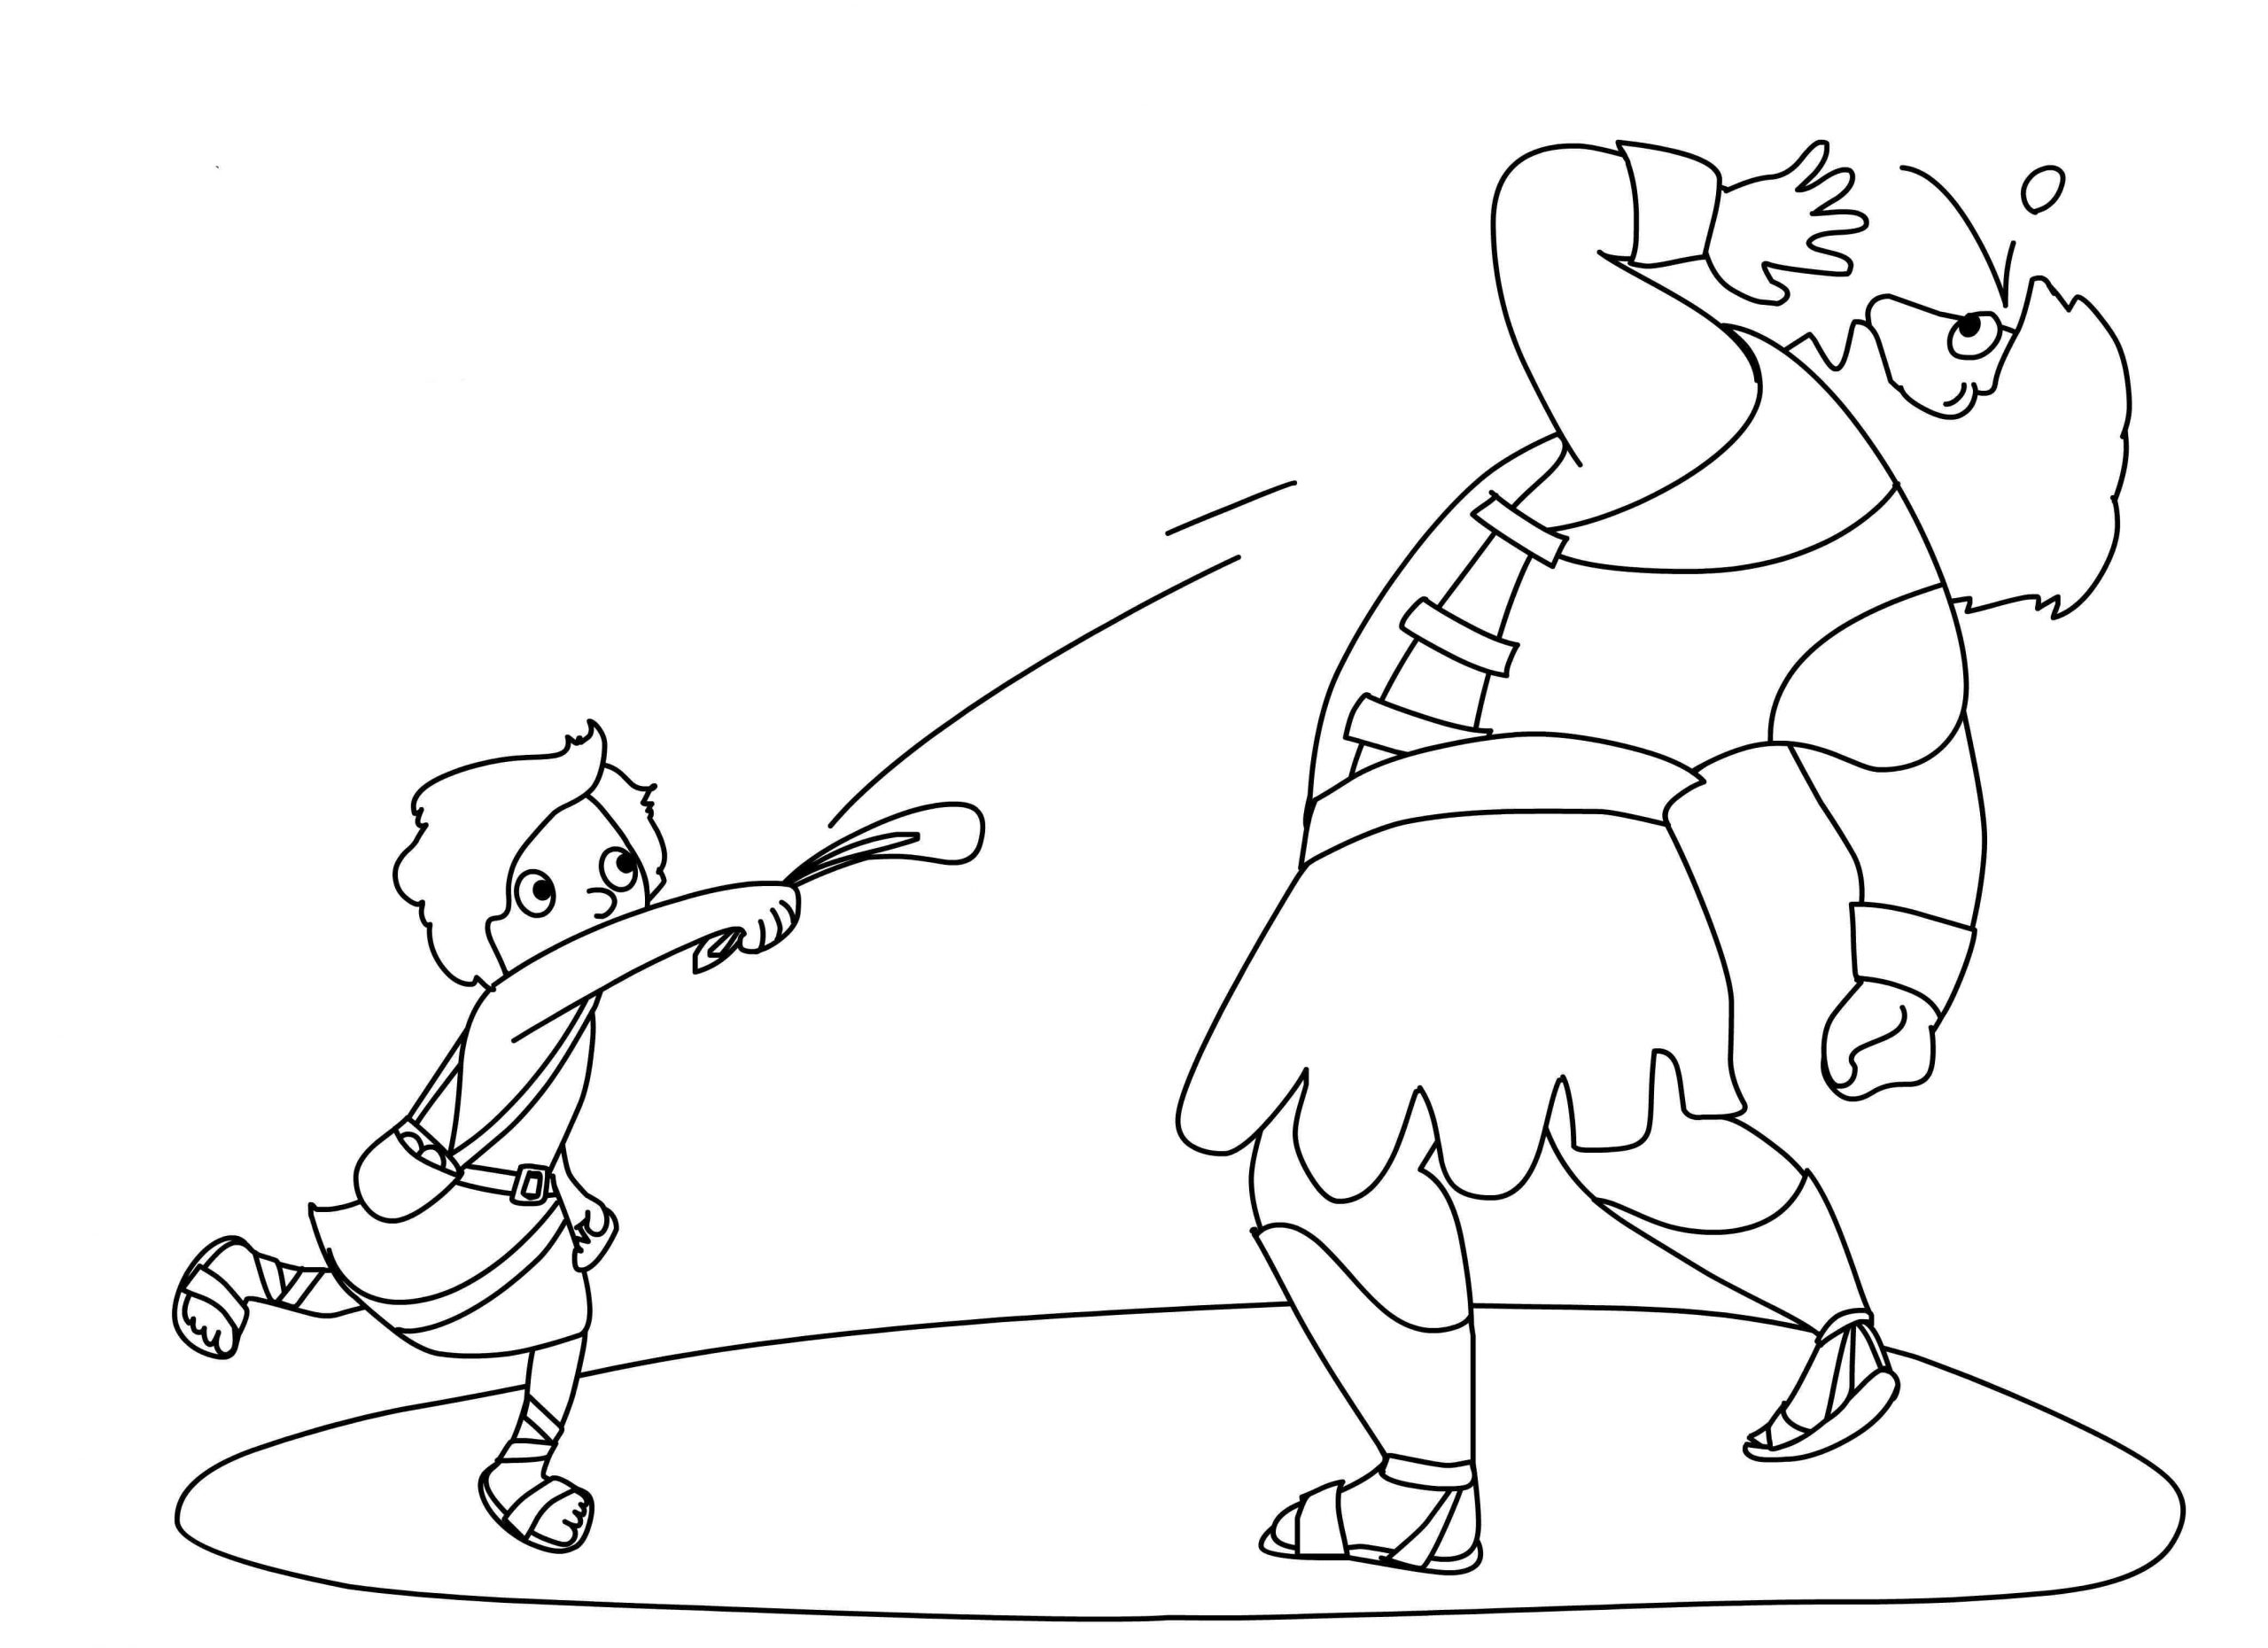 Desenhos de Imagem grátis de Davi e Golias para colorir